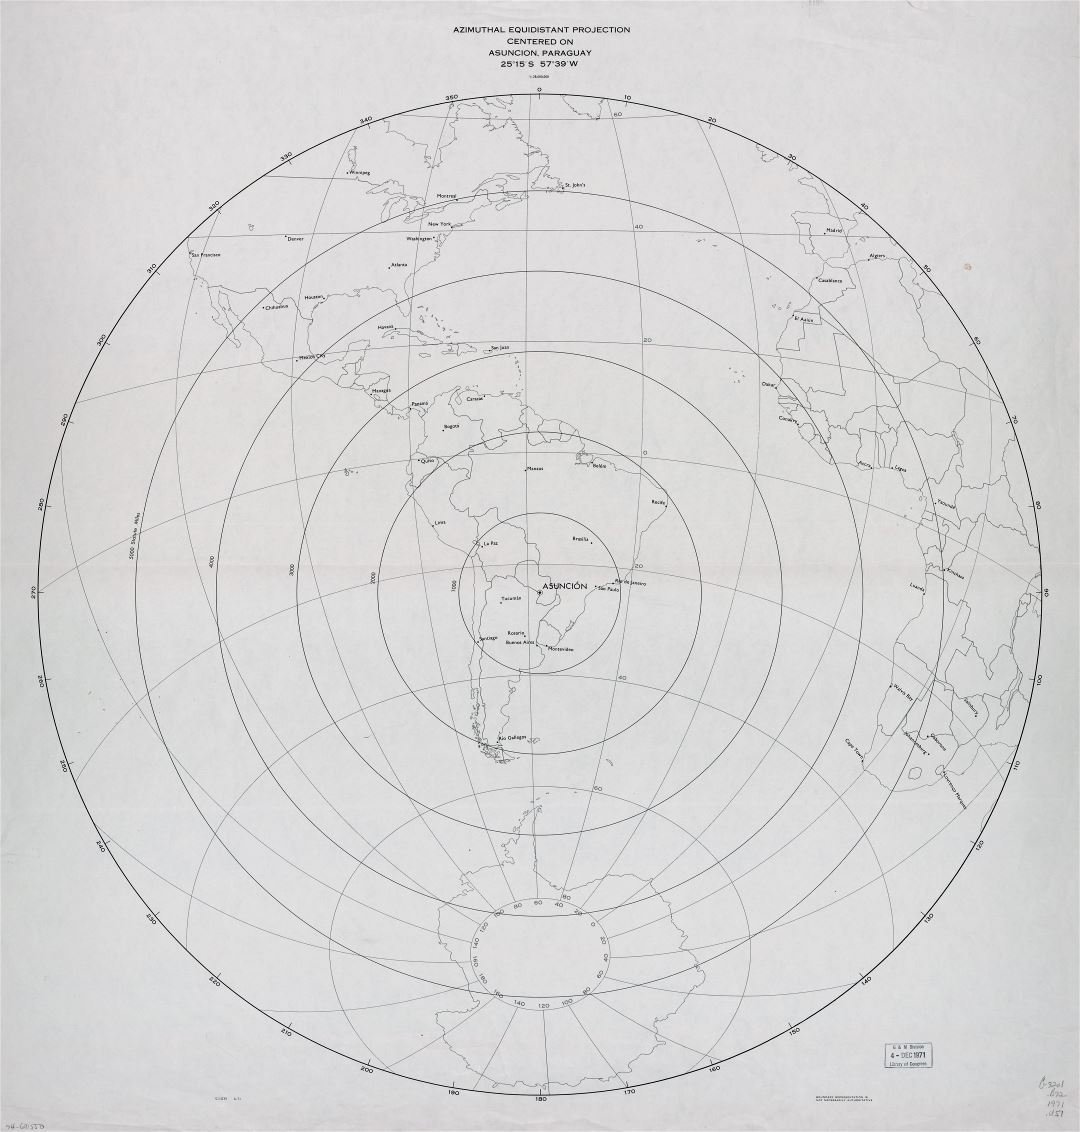 Большая подробная азимутальная эквидистантная карта проекции с центром в Асунсьоне, Парагвай - 1971